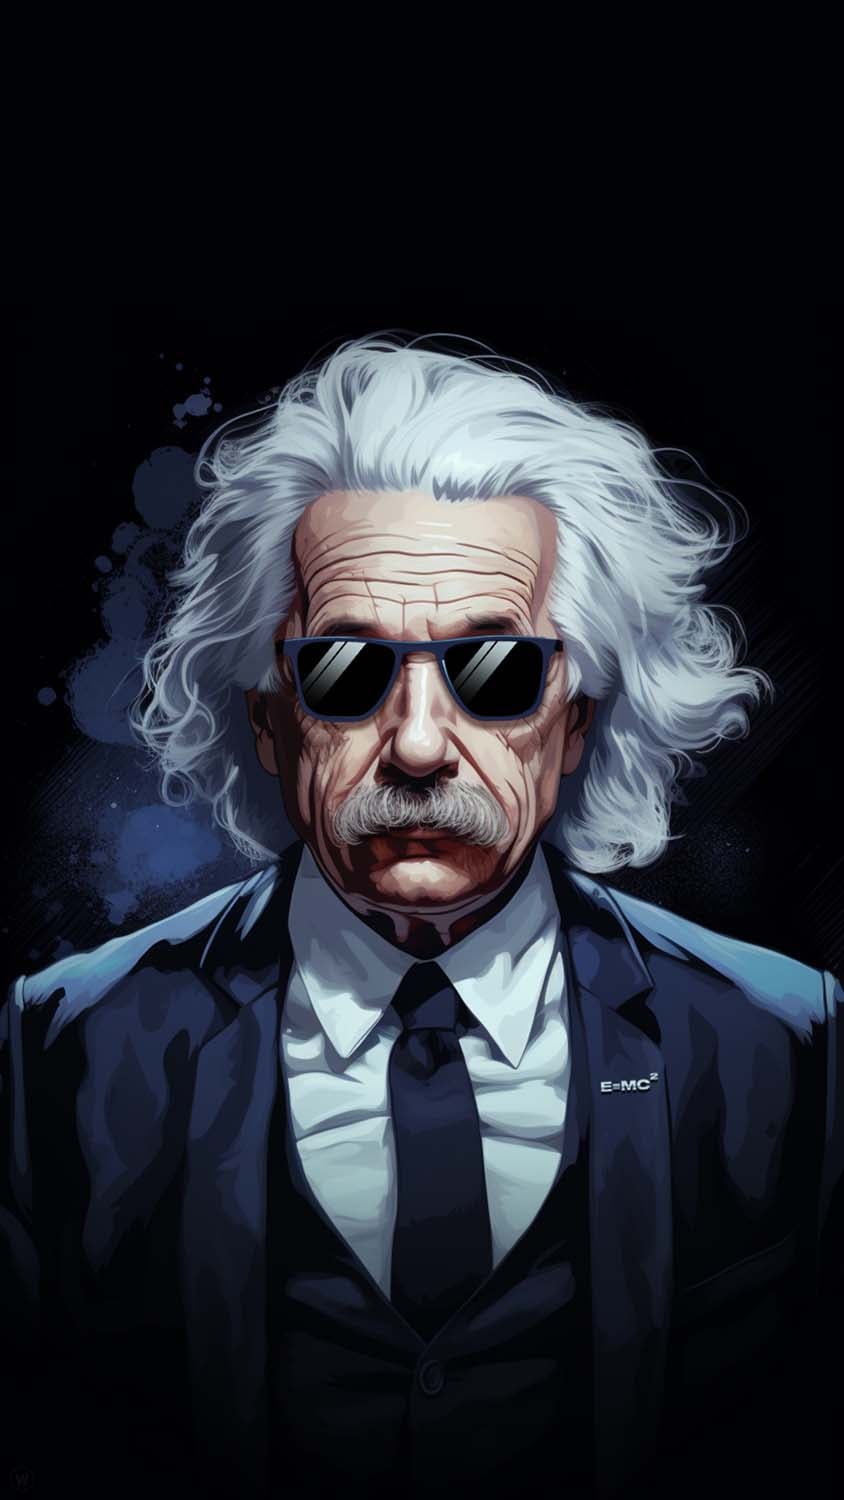 Albert Einstein iPhone Wallpaper 4K - iPhone Wallpapers